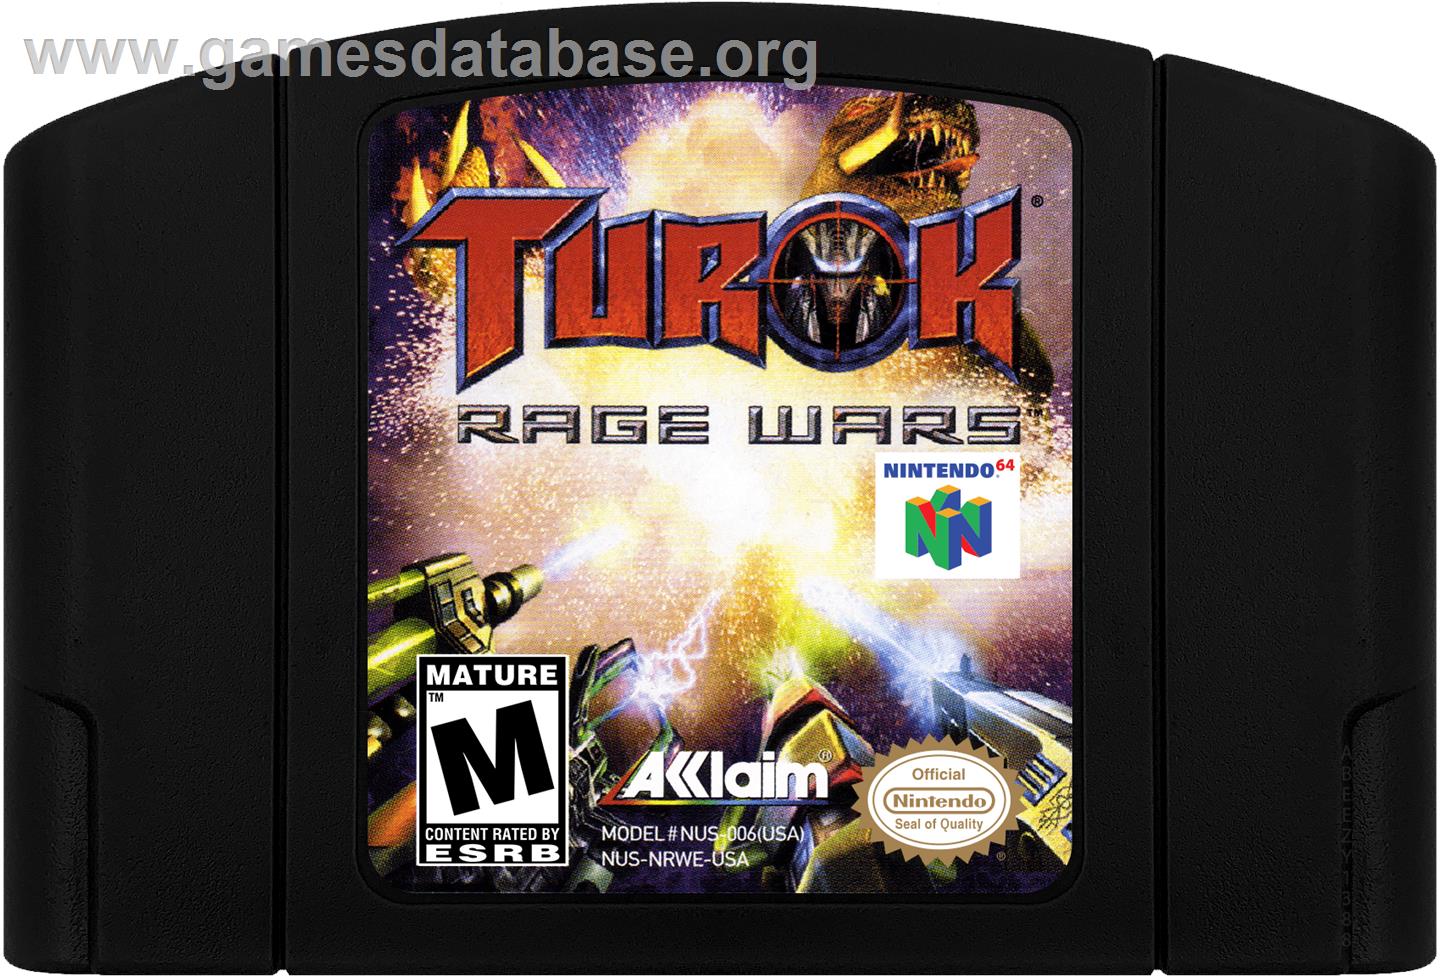 Turok: Rage Wars - Nintendo N64 - Artwork - Cartridge